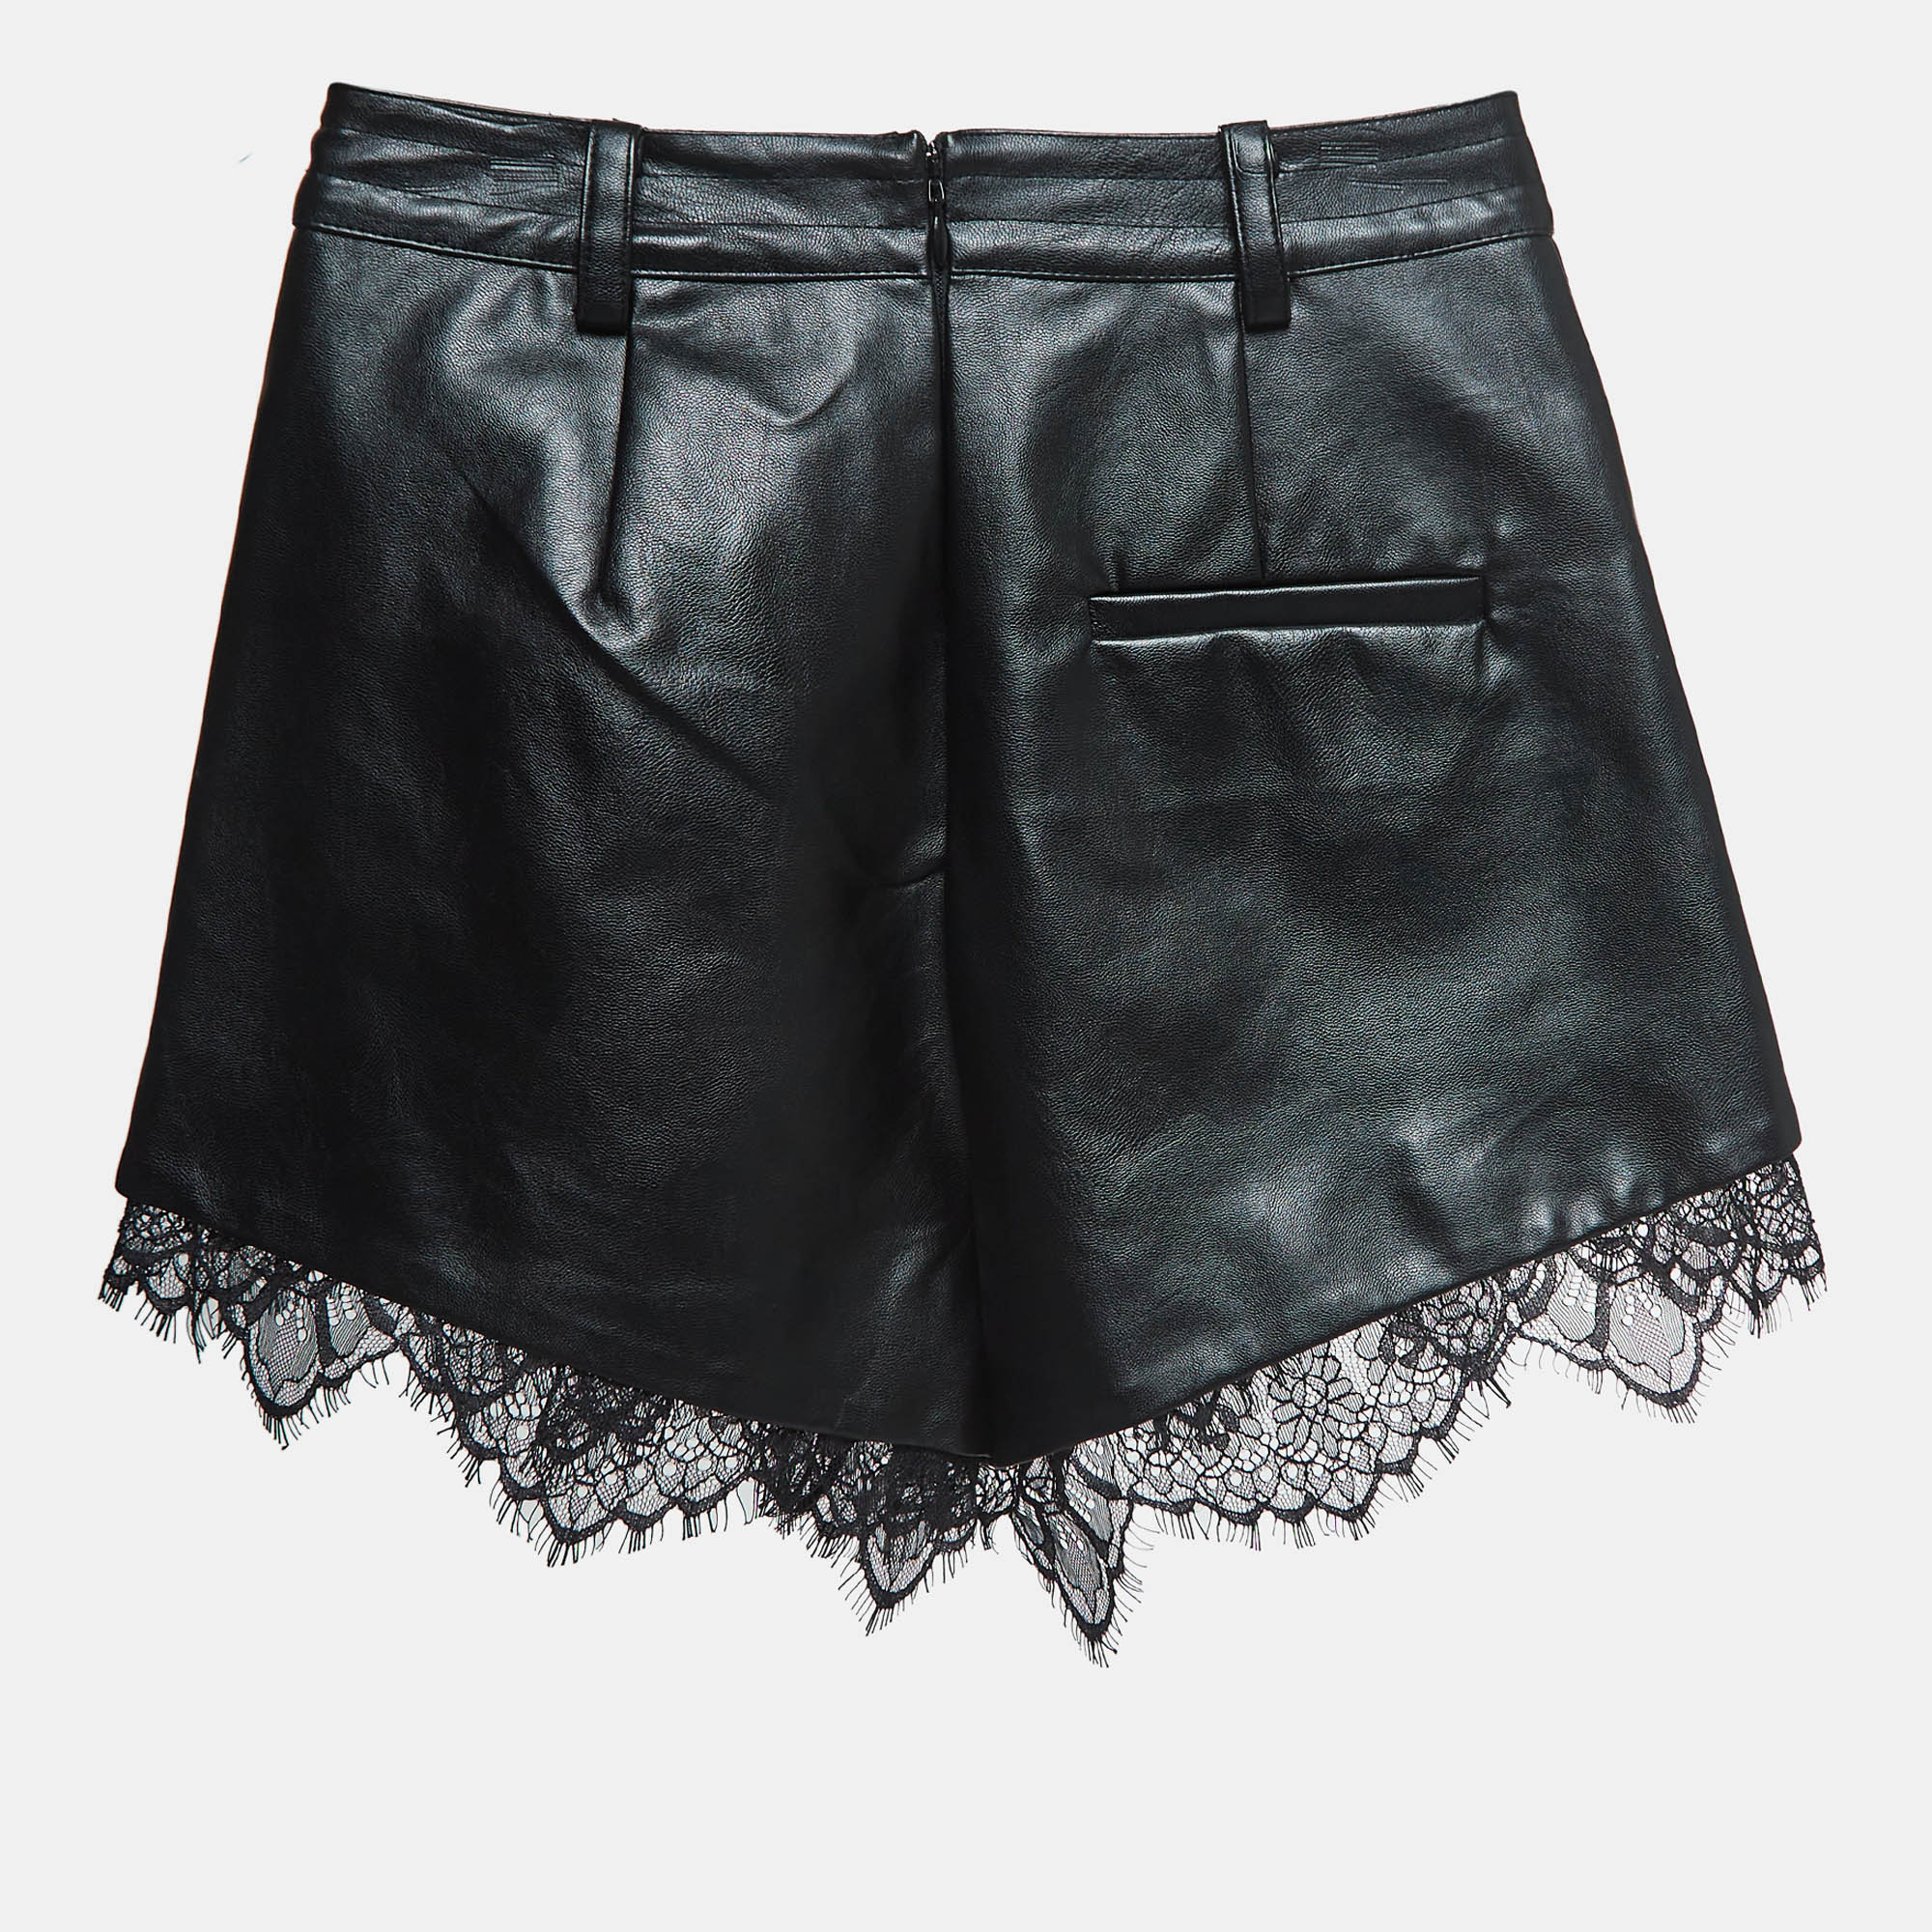 Self-portrait black lace trim faux leather shorts xs